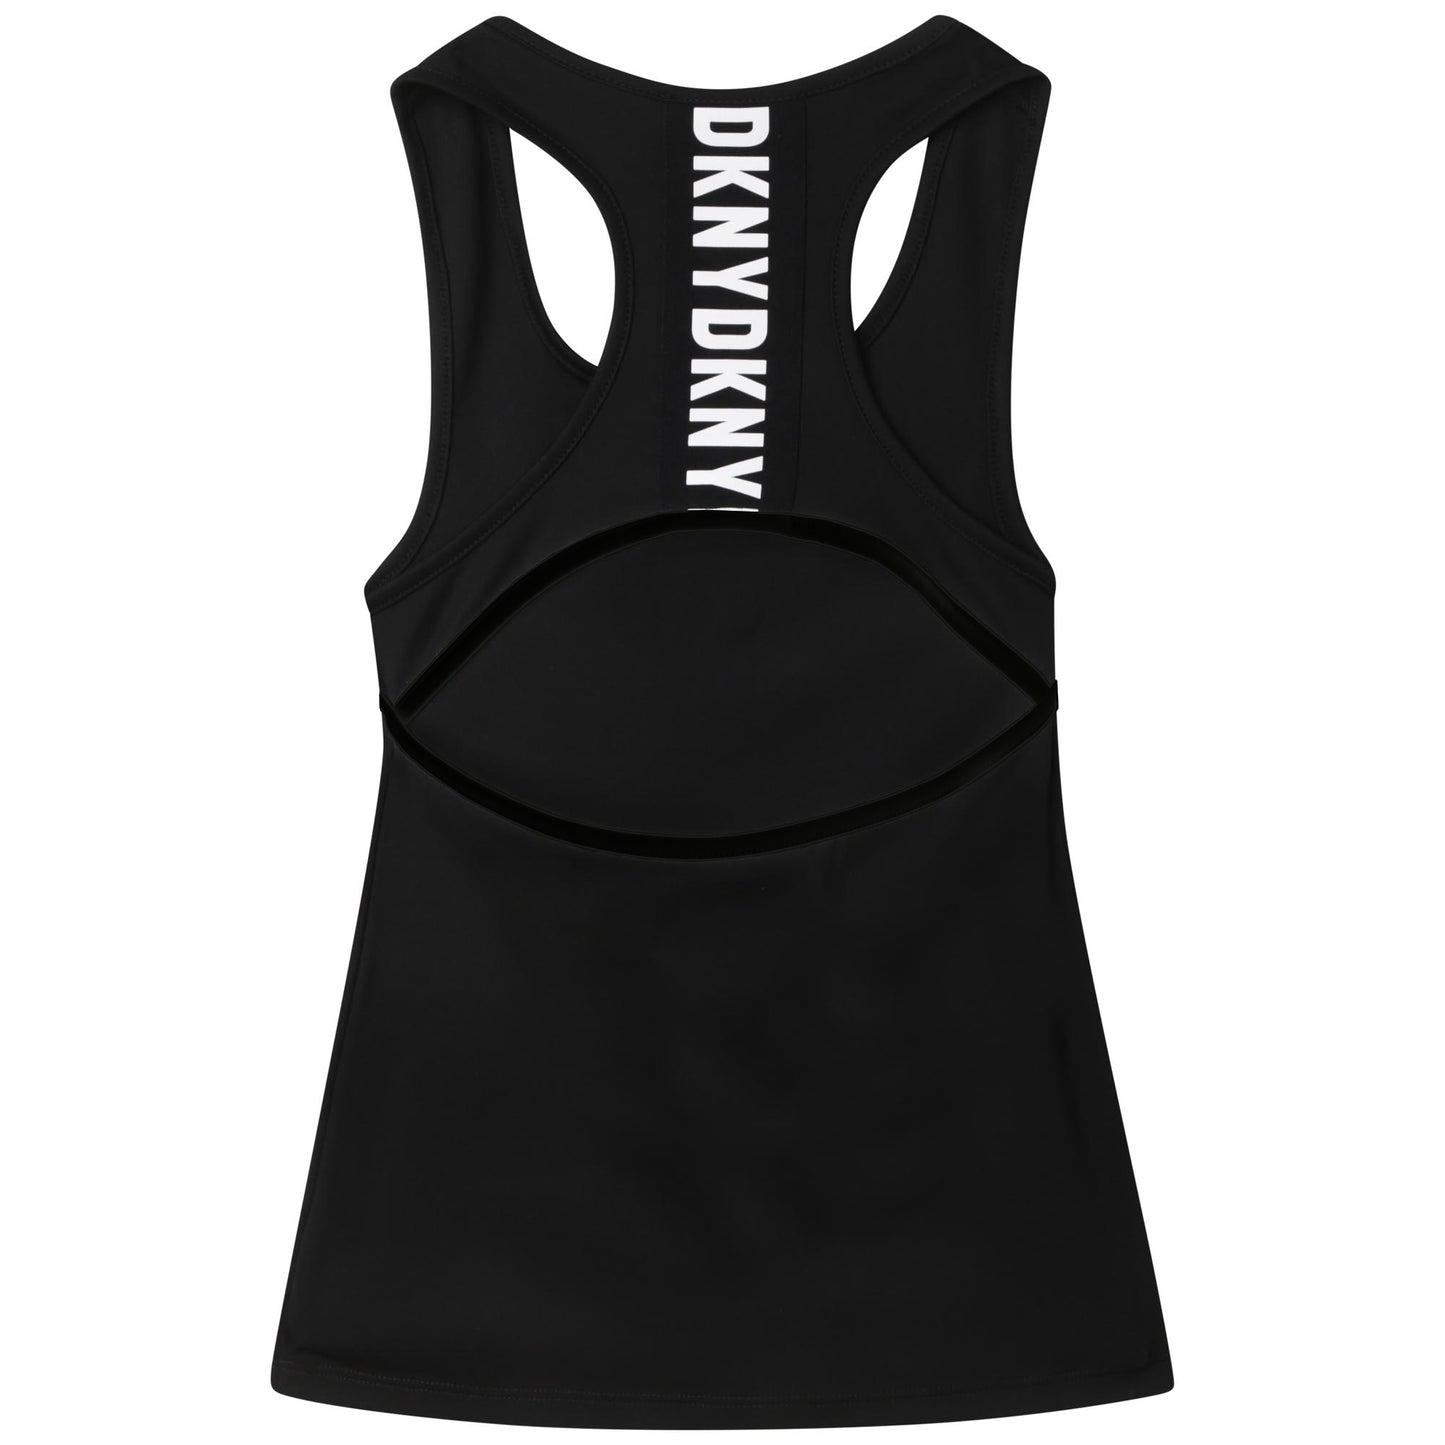 DKNY Girl's Black Badge Vest Top